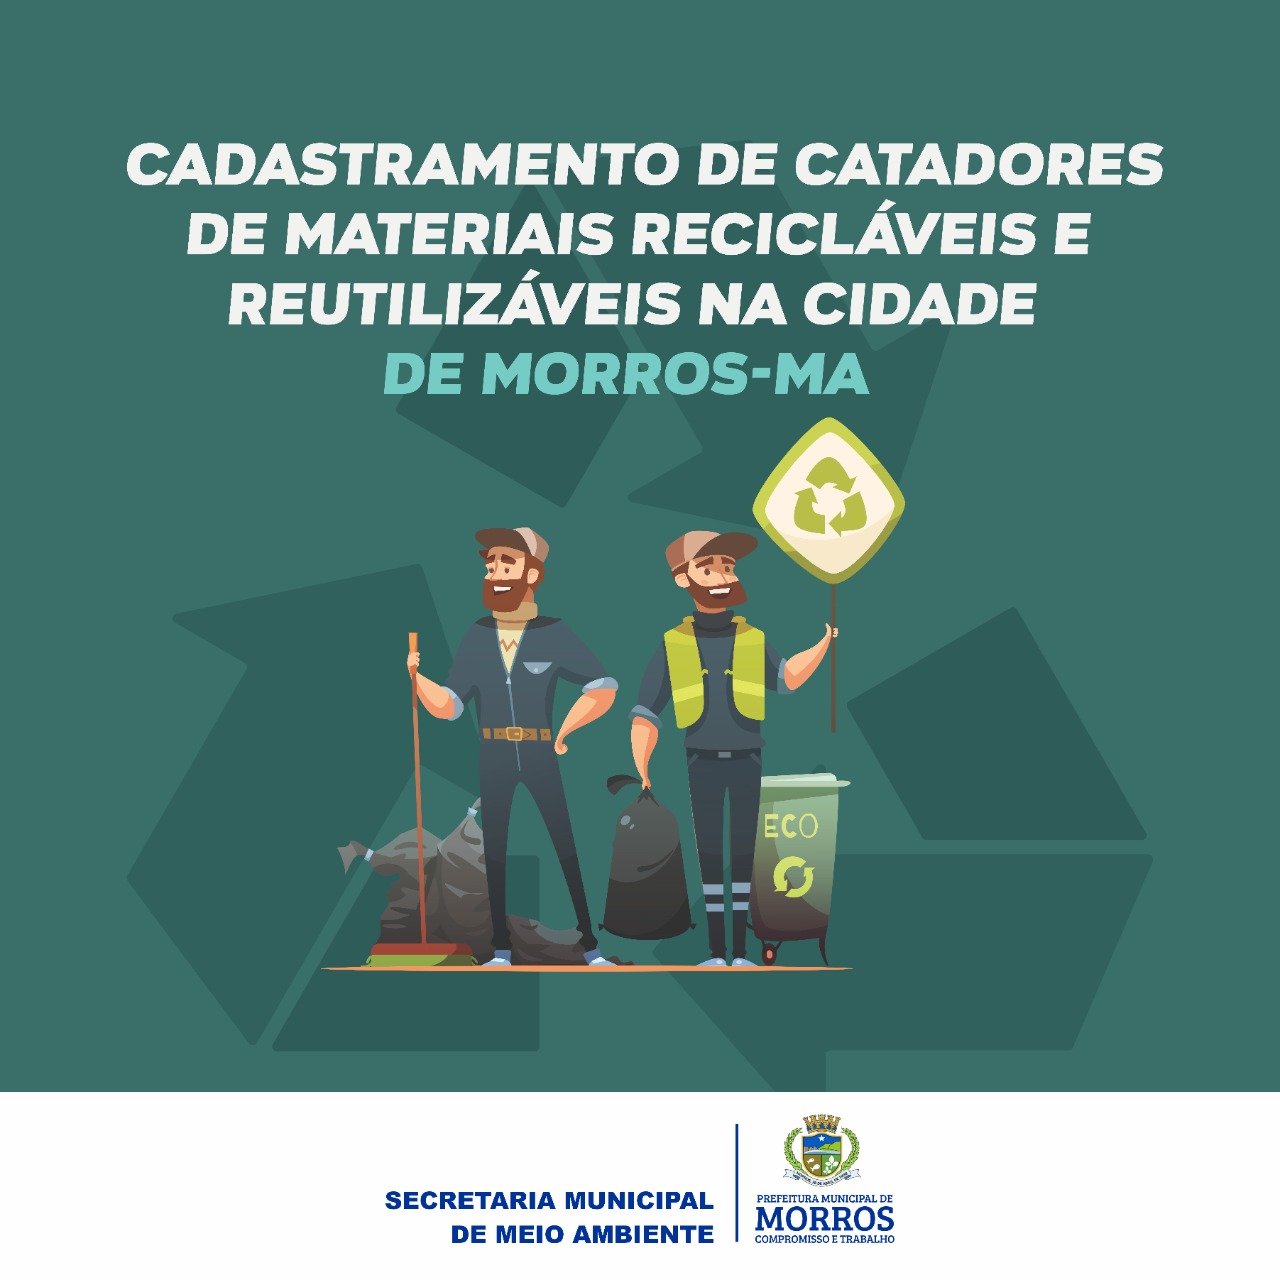 Cadastramento de catadores de materiais recicláveis e reutilizáveis na cidade de Morros-Ma